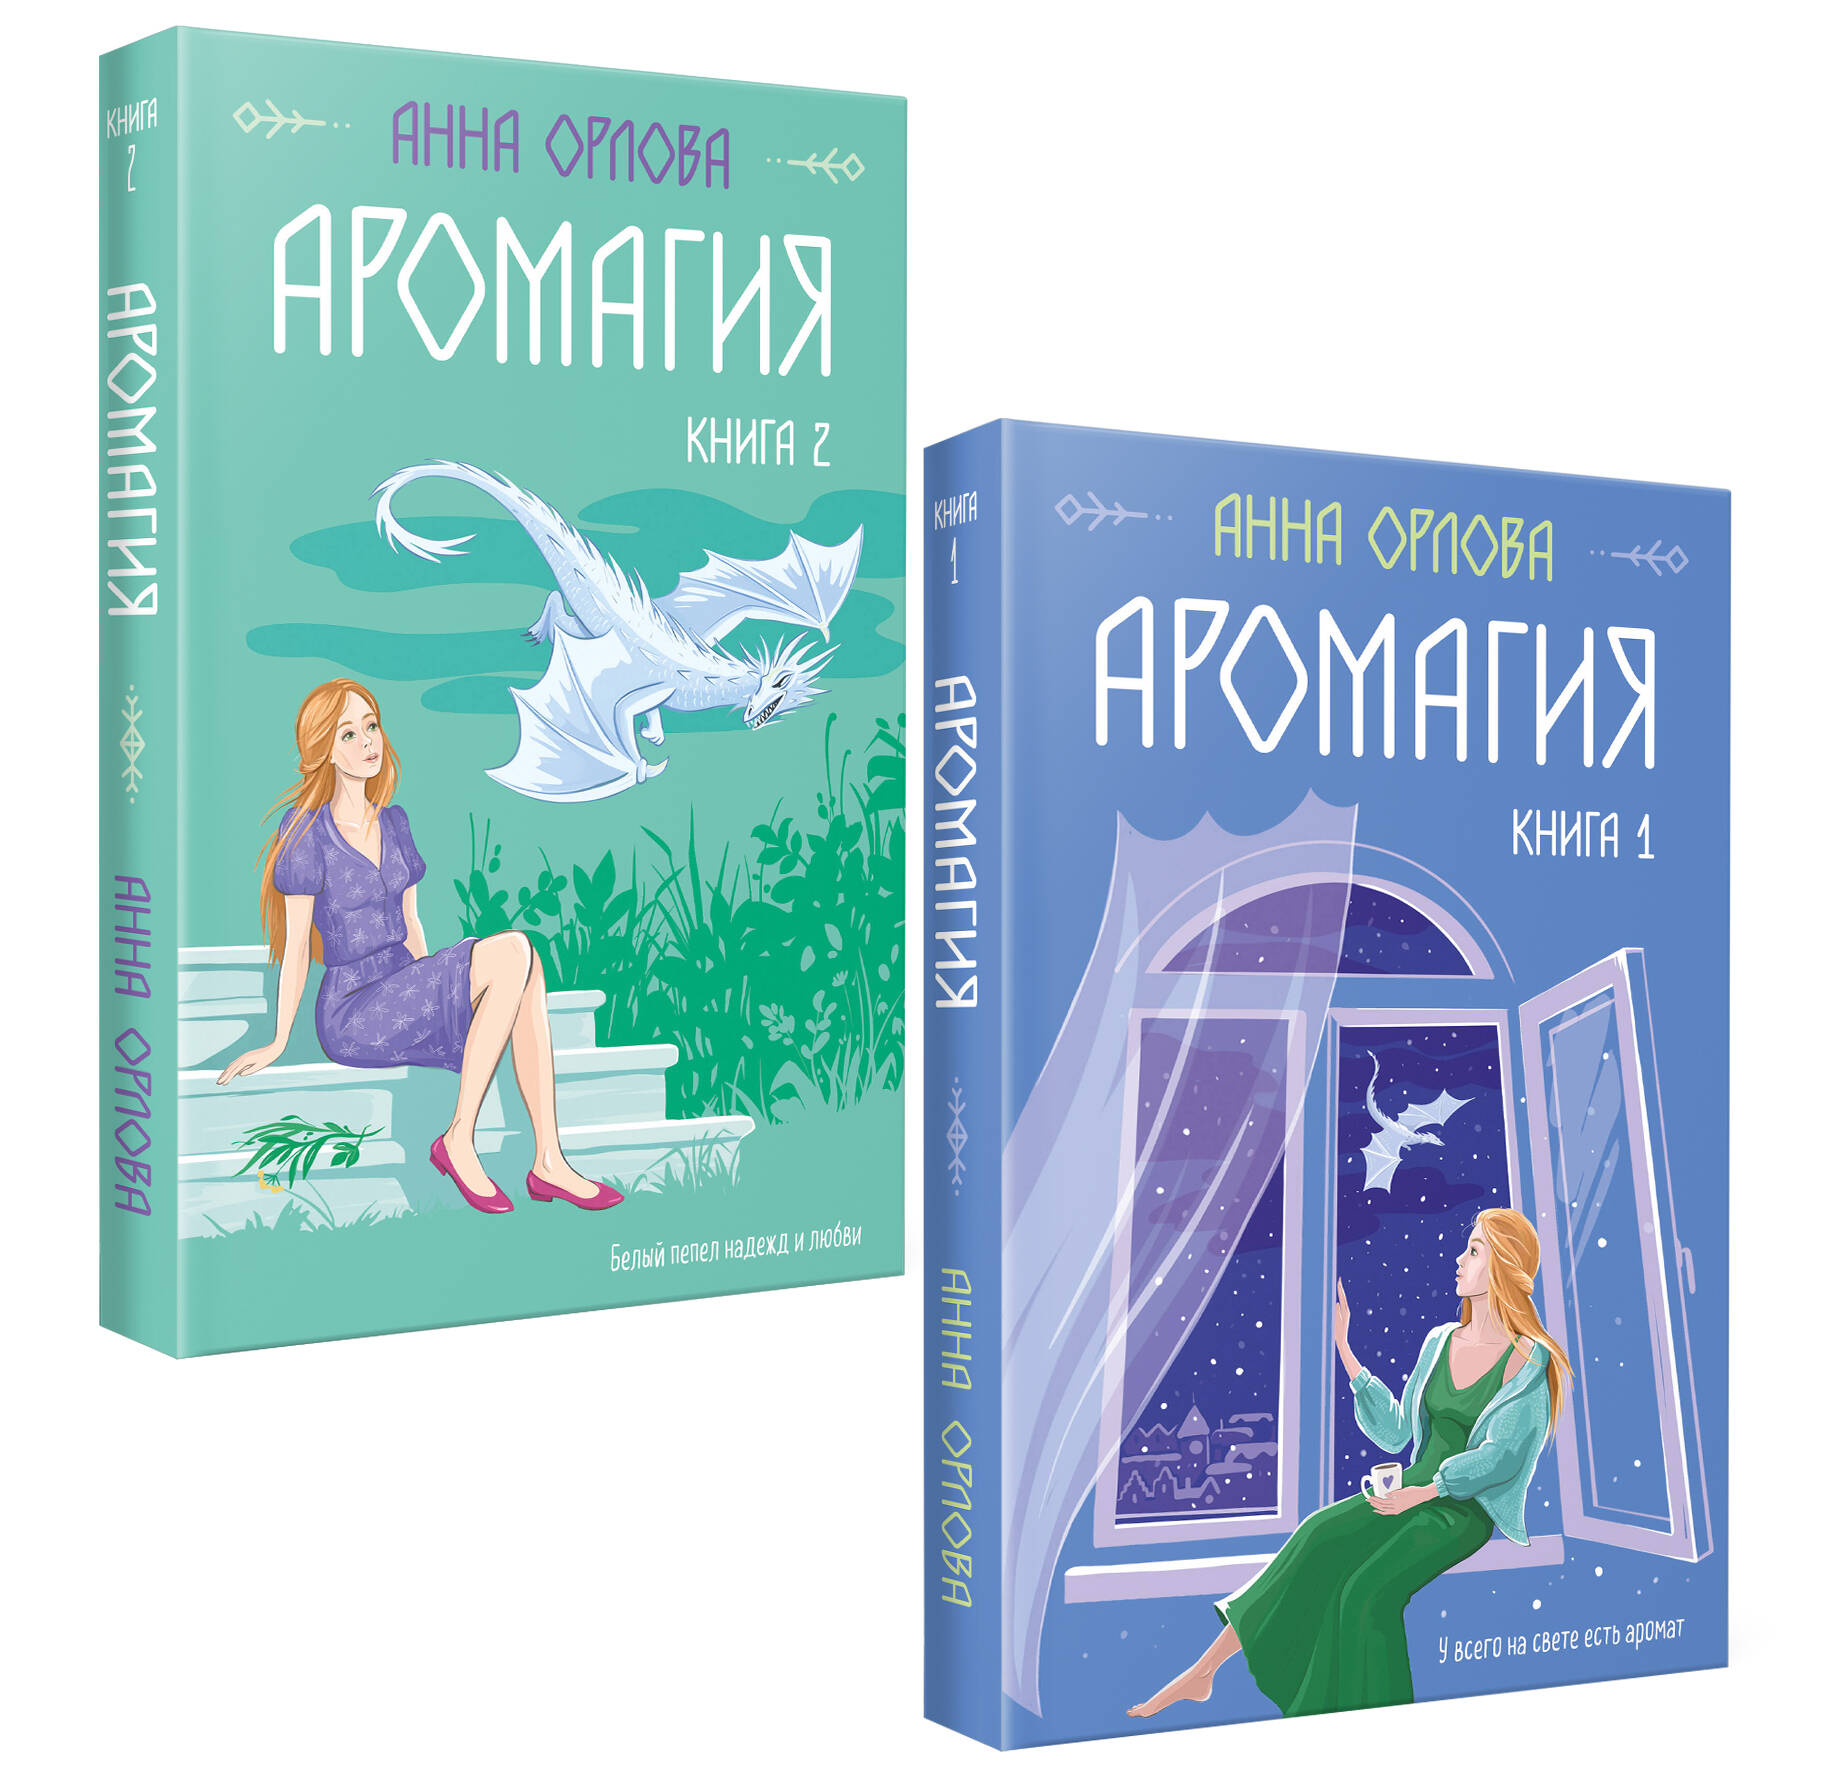 Орлова Анна - Аромагия: Книга 1,2 (комплект из двух книг)